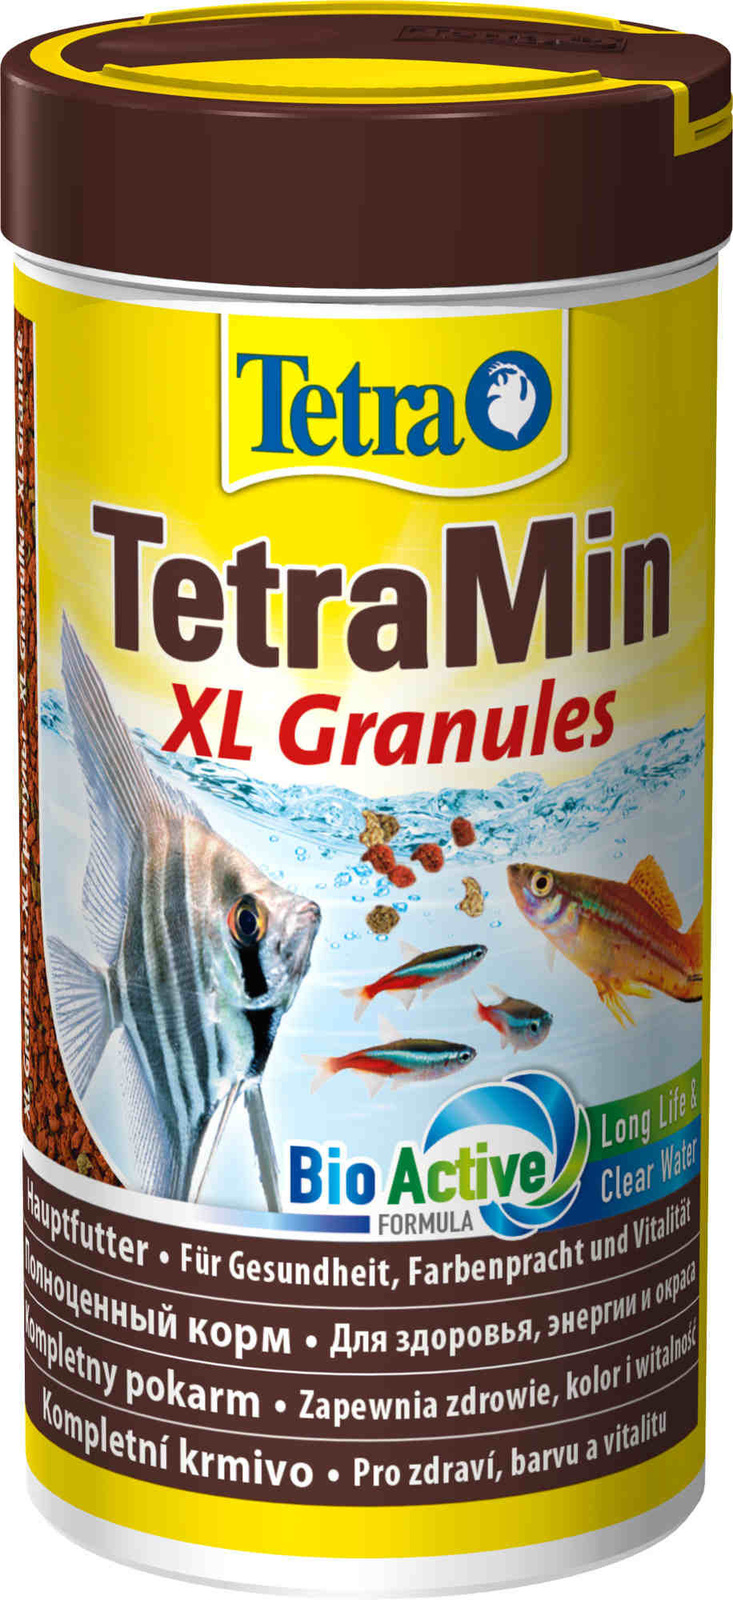 Tetra (корма) Tetra (корма) корм для всех видов крупных рыб, крупные гранулы (82 г) tetra корма tetra корма корм для усиления окраса рыб гранулы 15 г